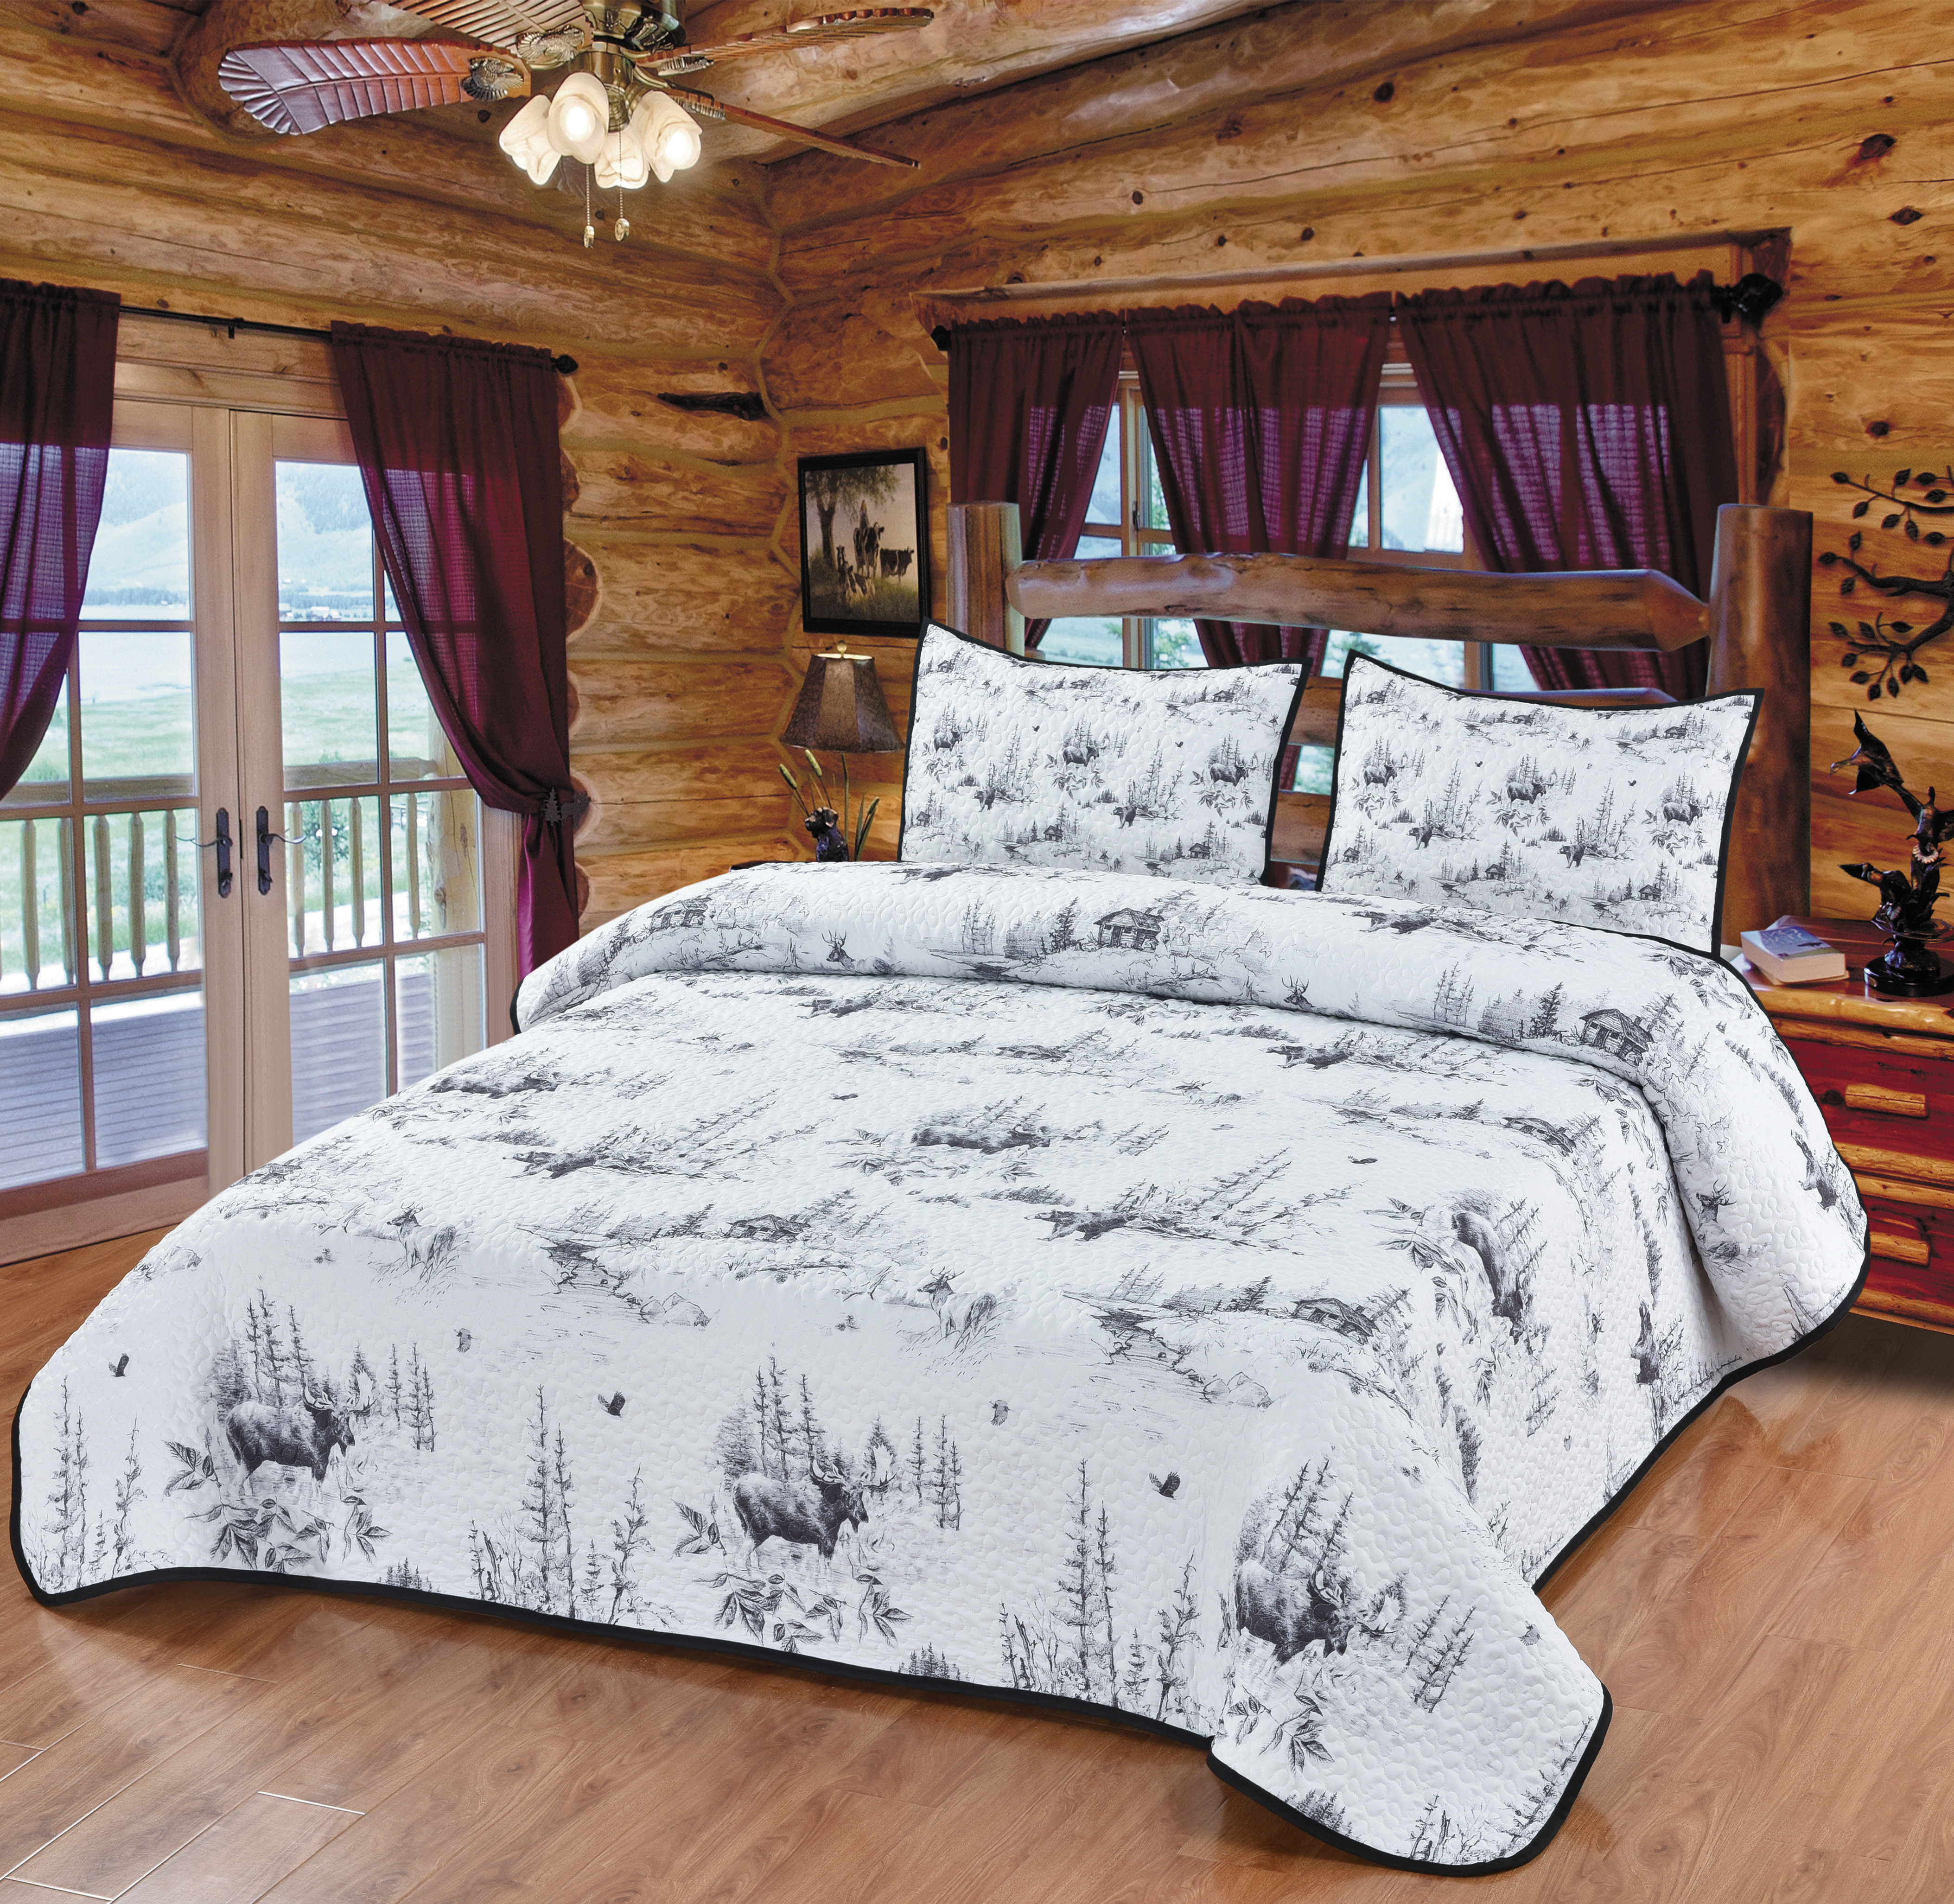 https://assets.wfcdn.com/im/24624554/compr-r85/2478/247893575/ferndale-lodge-toile-moose-bear-woodland-forest-animal-sketch-print-decorative-quilt-bedding-set.jpg